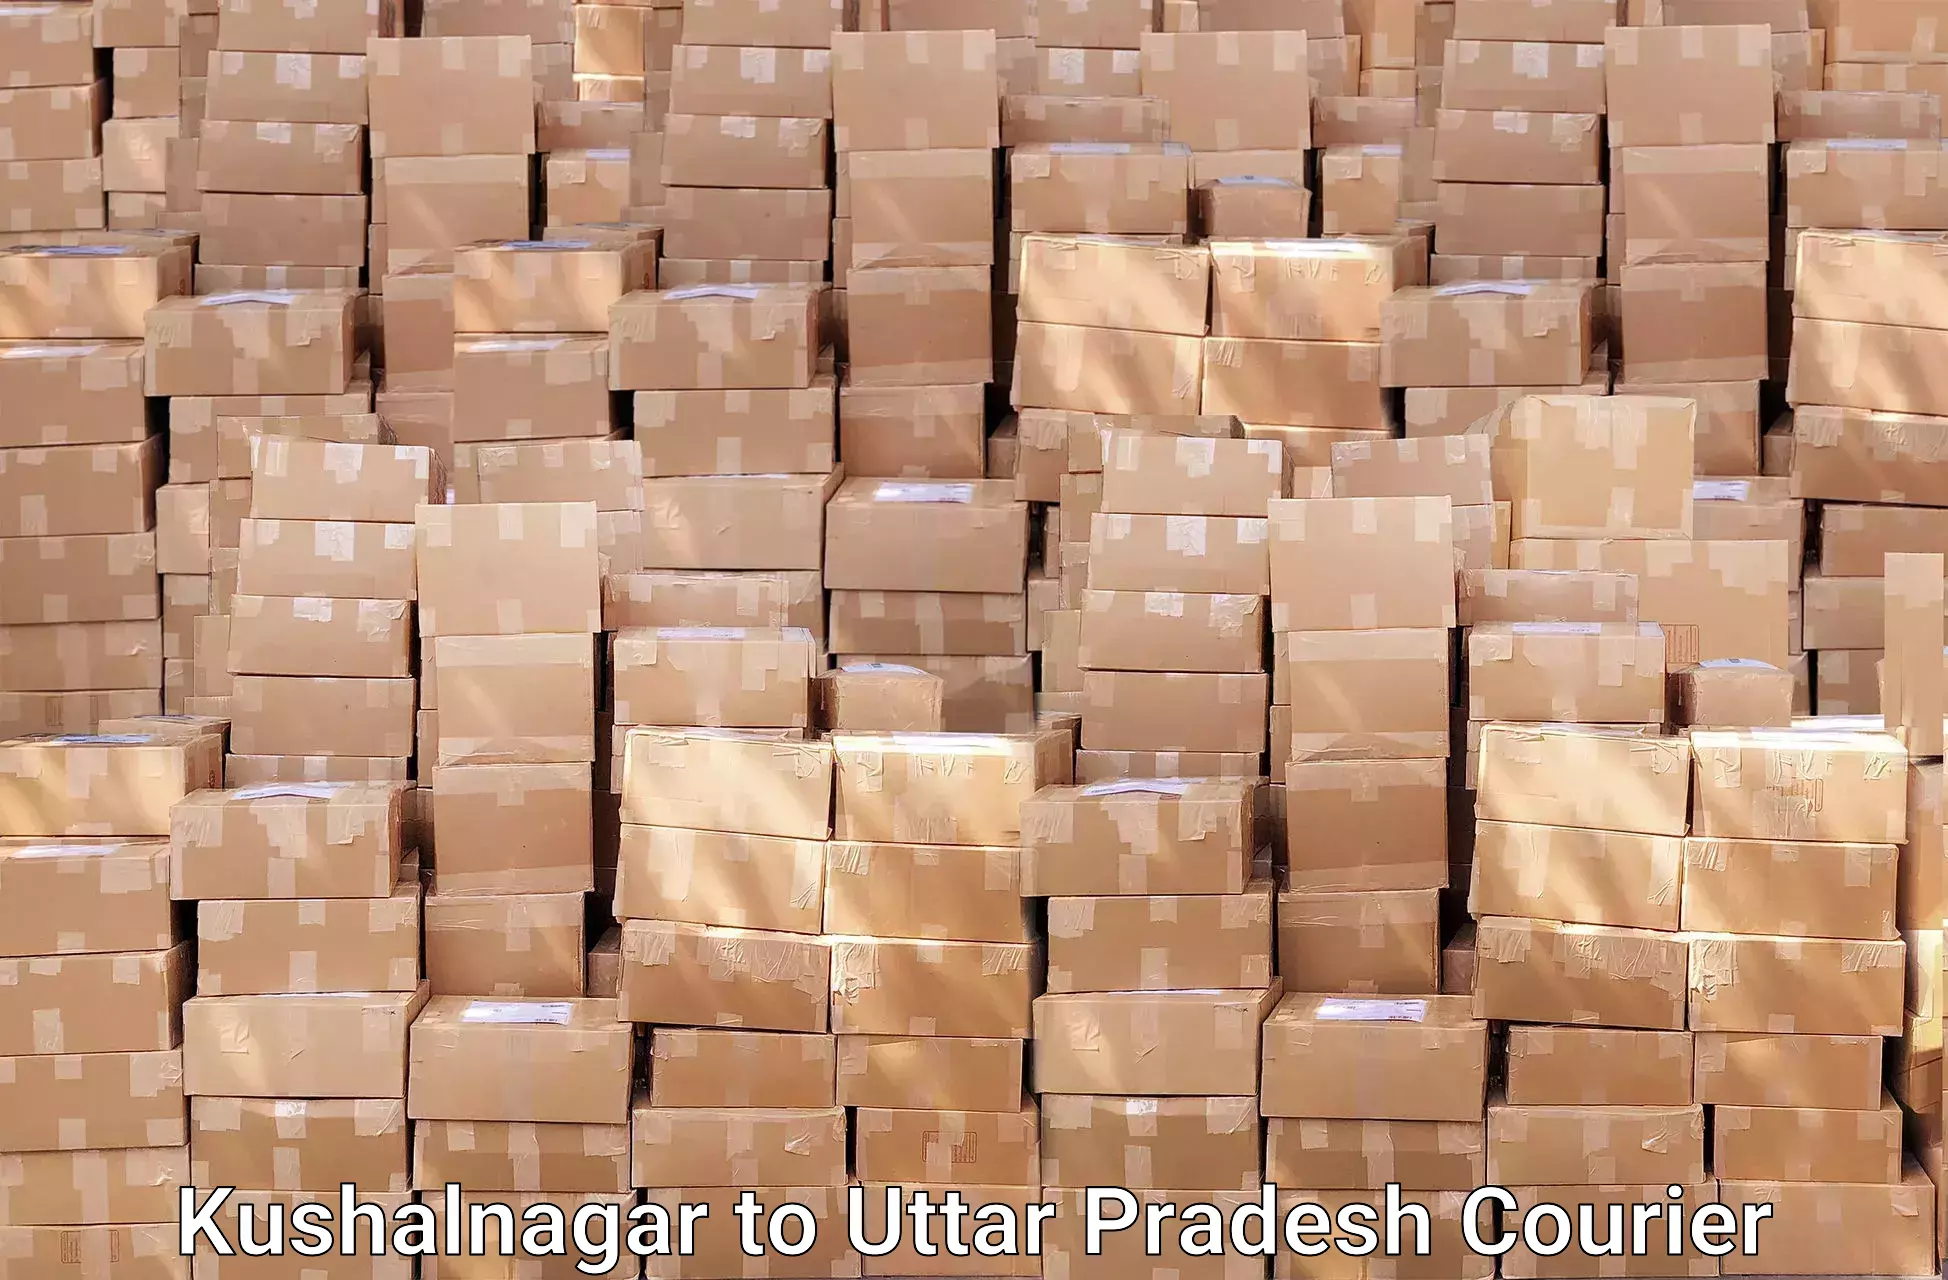 Budget-friendly movers Kushalnagar to Farrukhabad